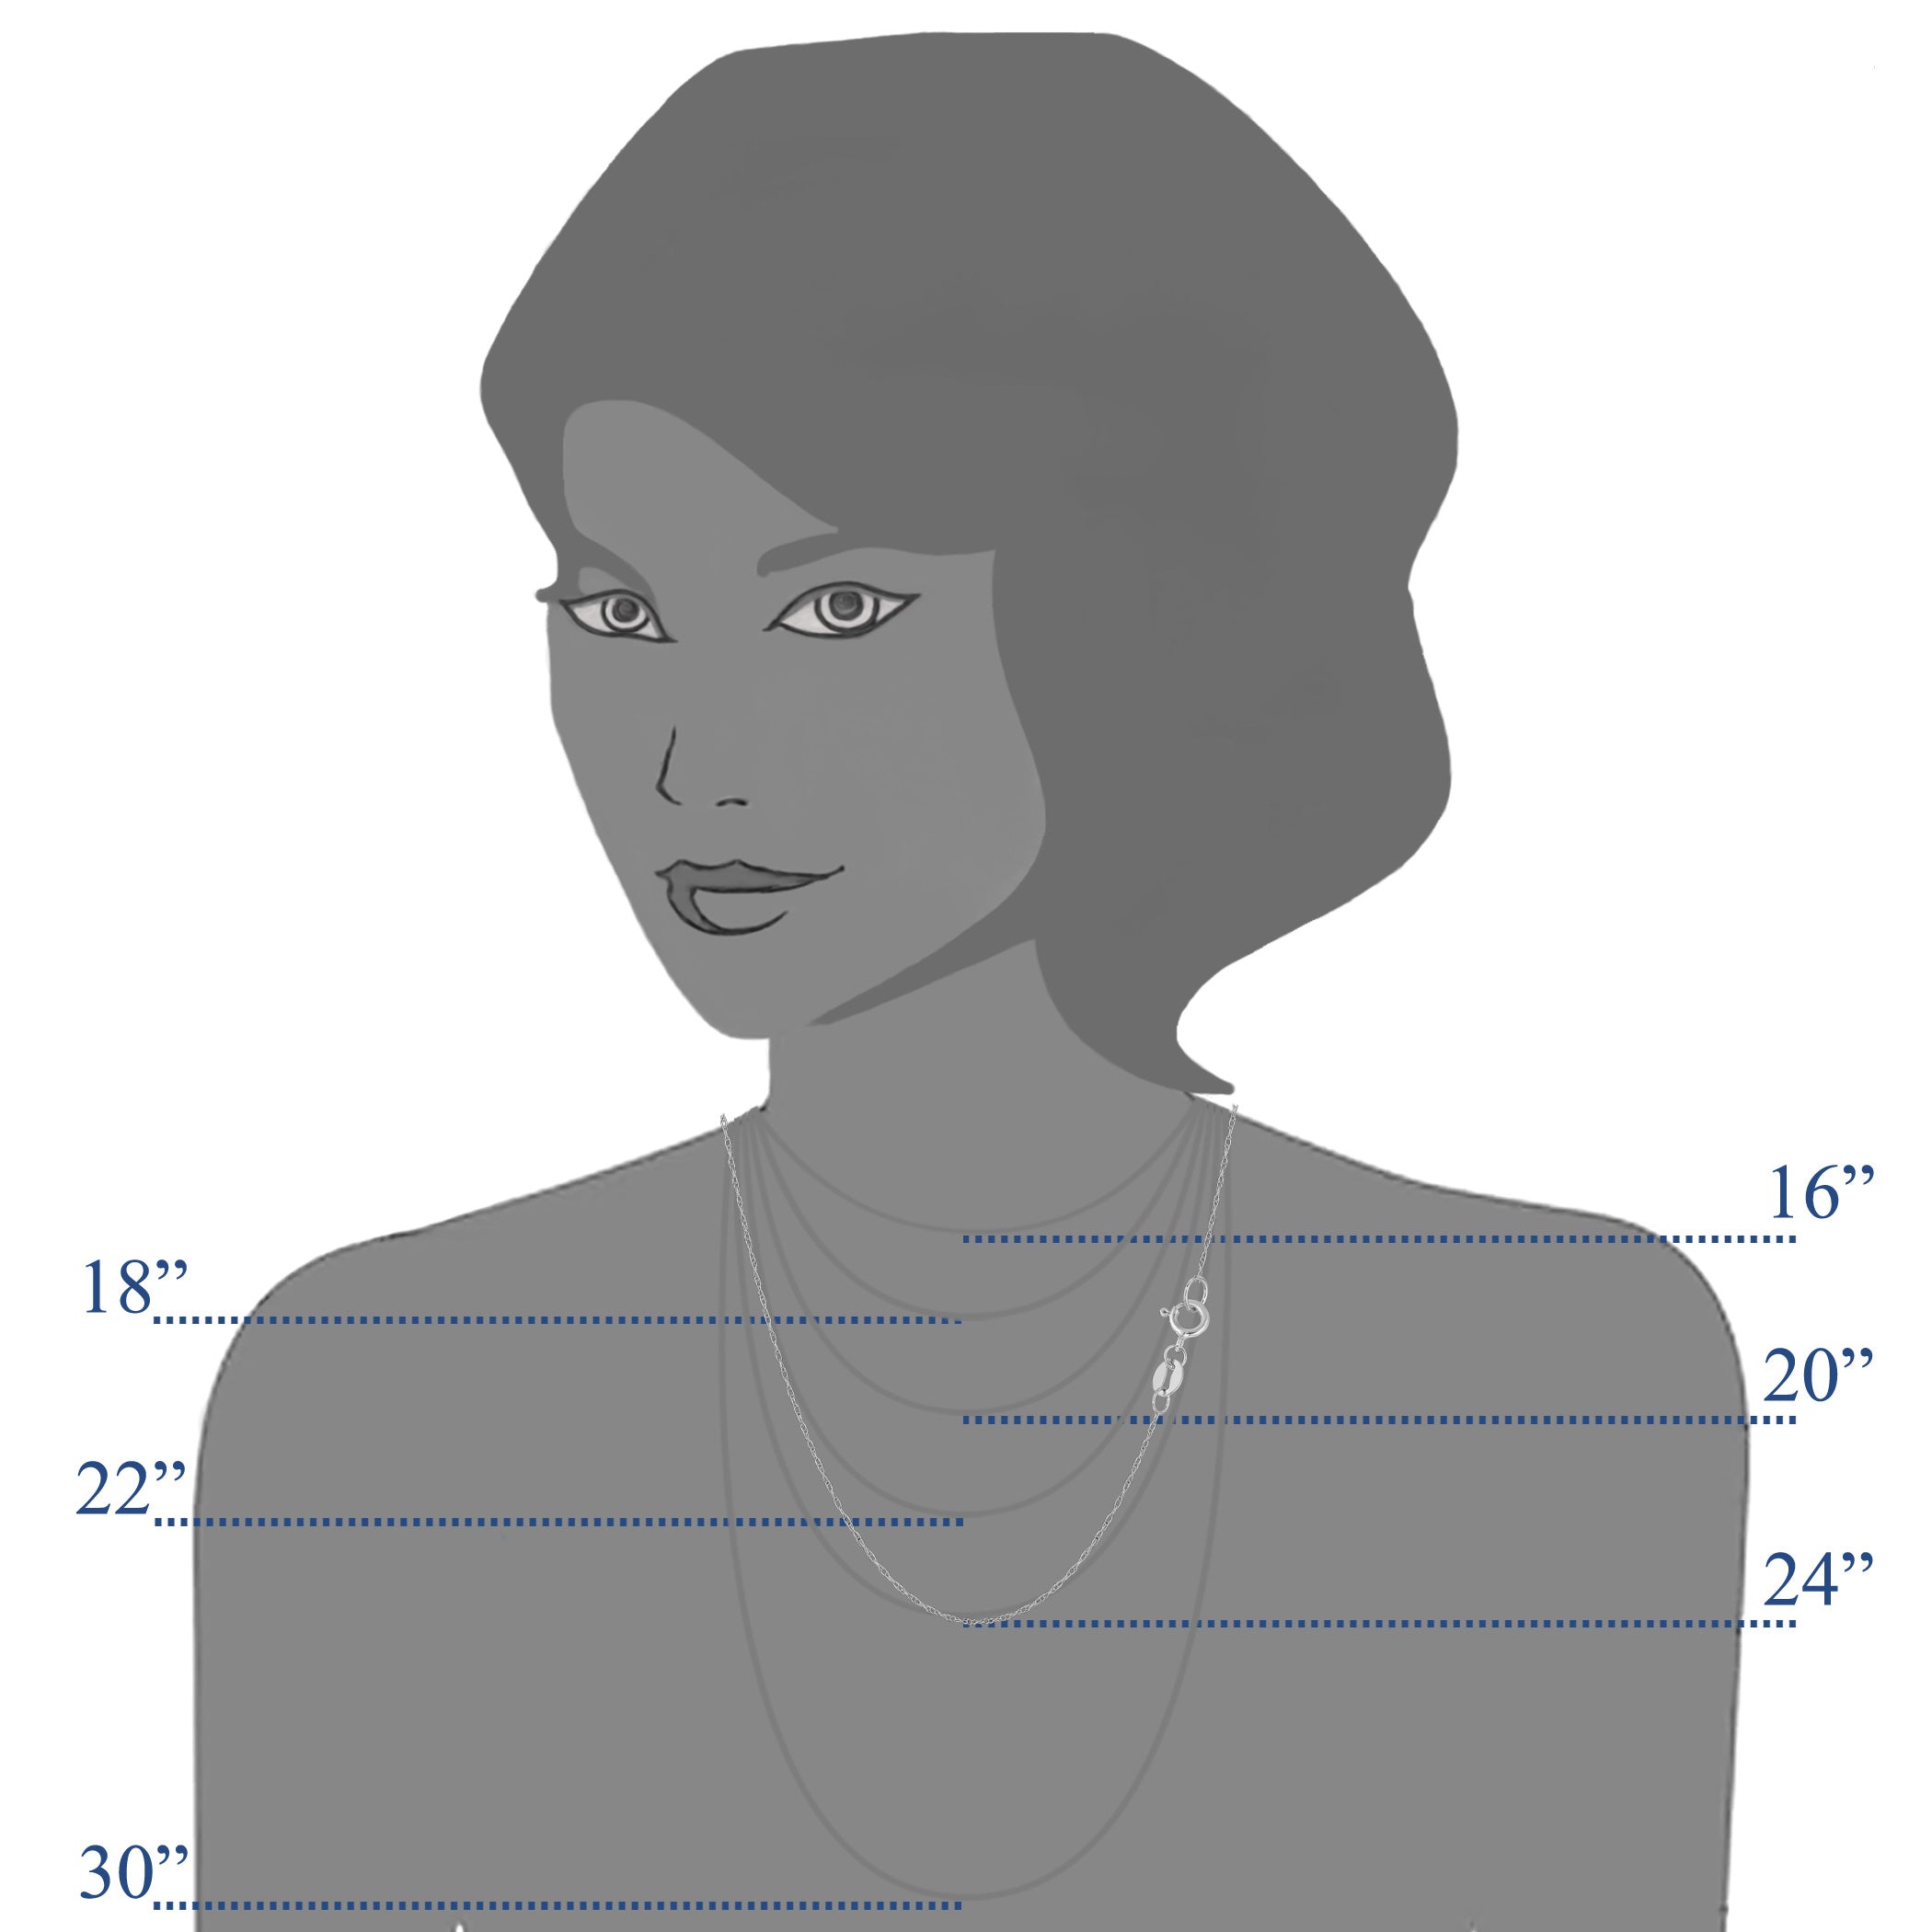 14 k vitguld repkedja halsband, 0,5 mm fina designersmycken för män och kvinnor